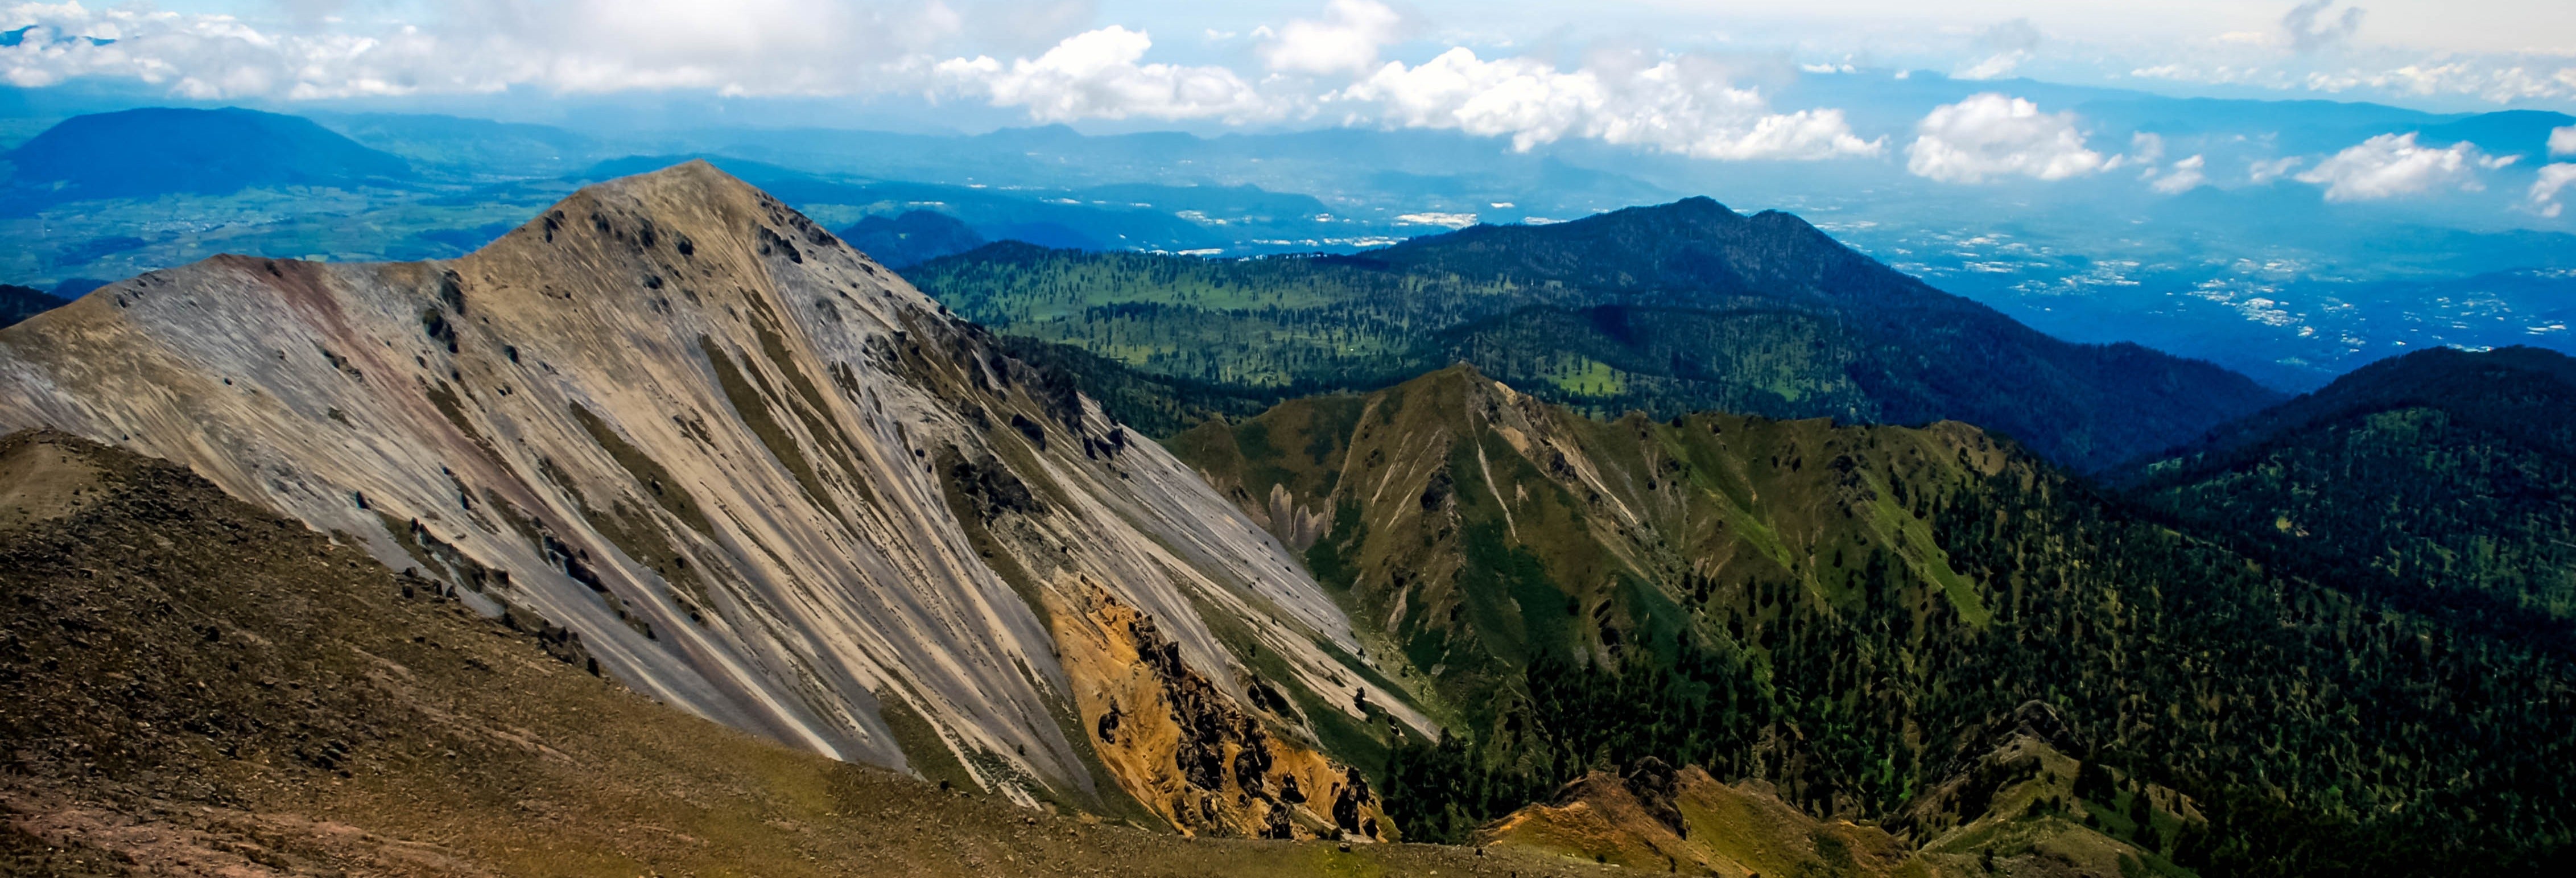 Nevado de Toluca National Park Hikes